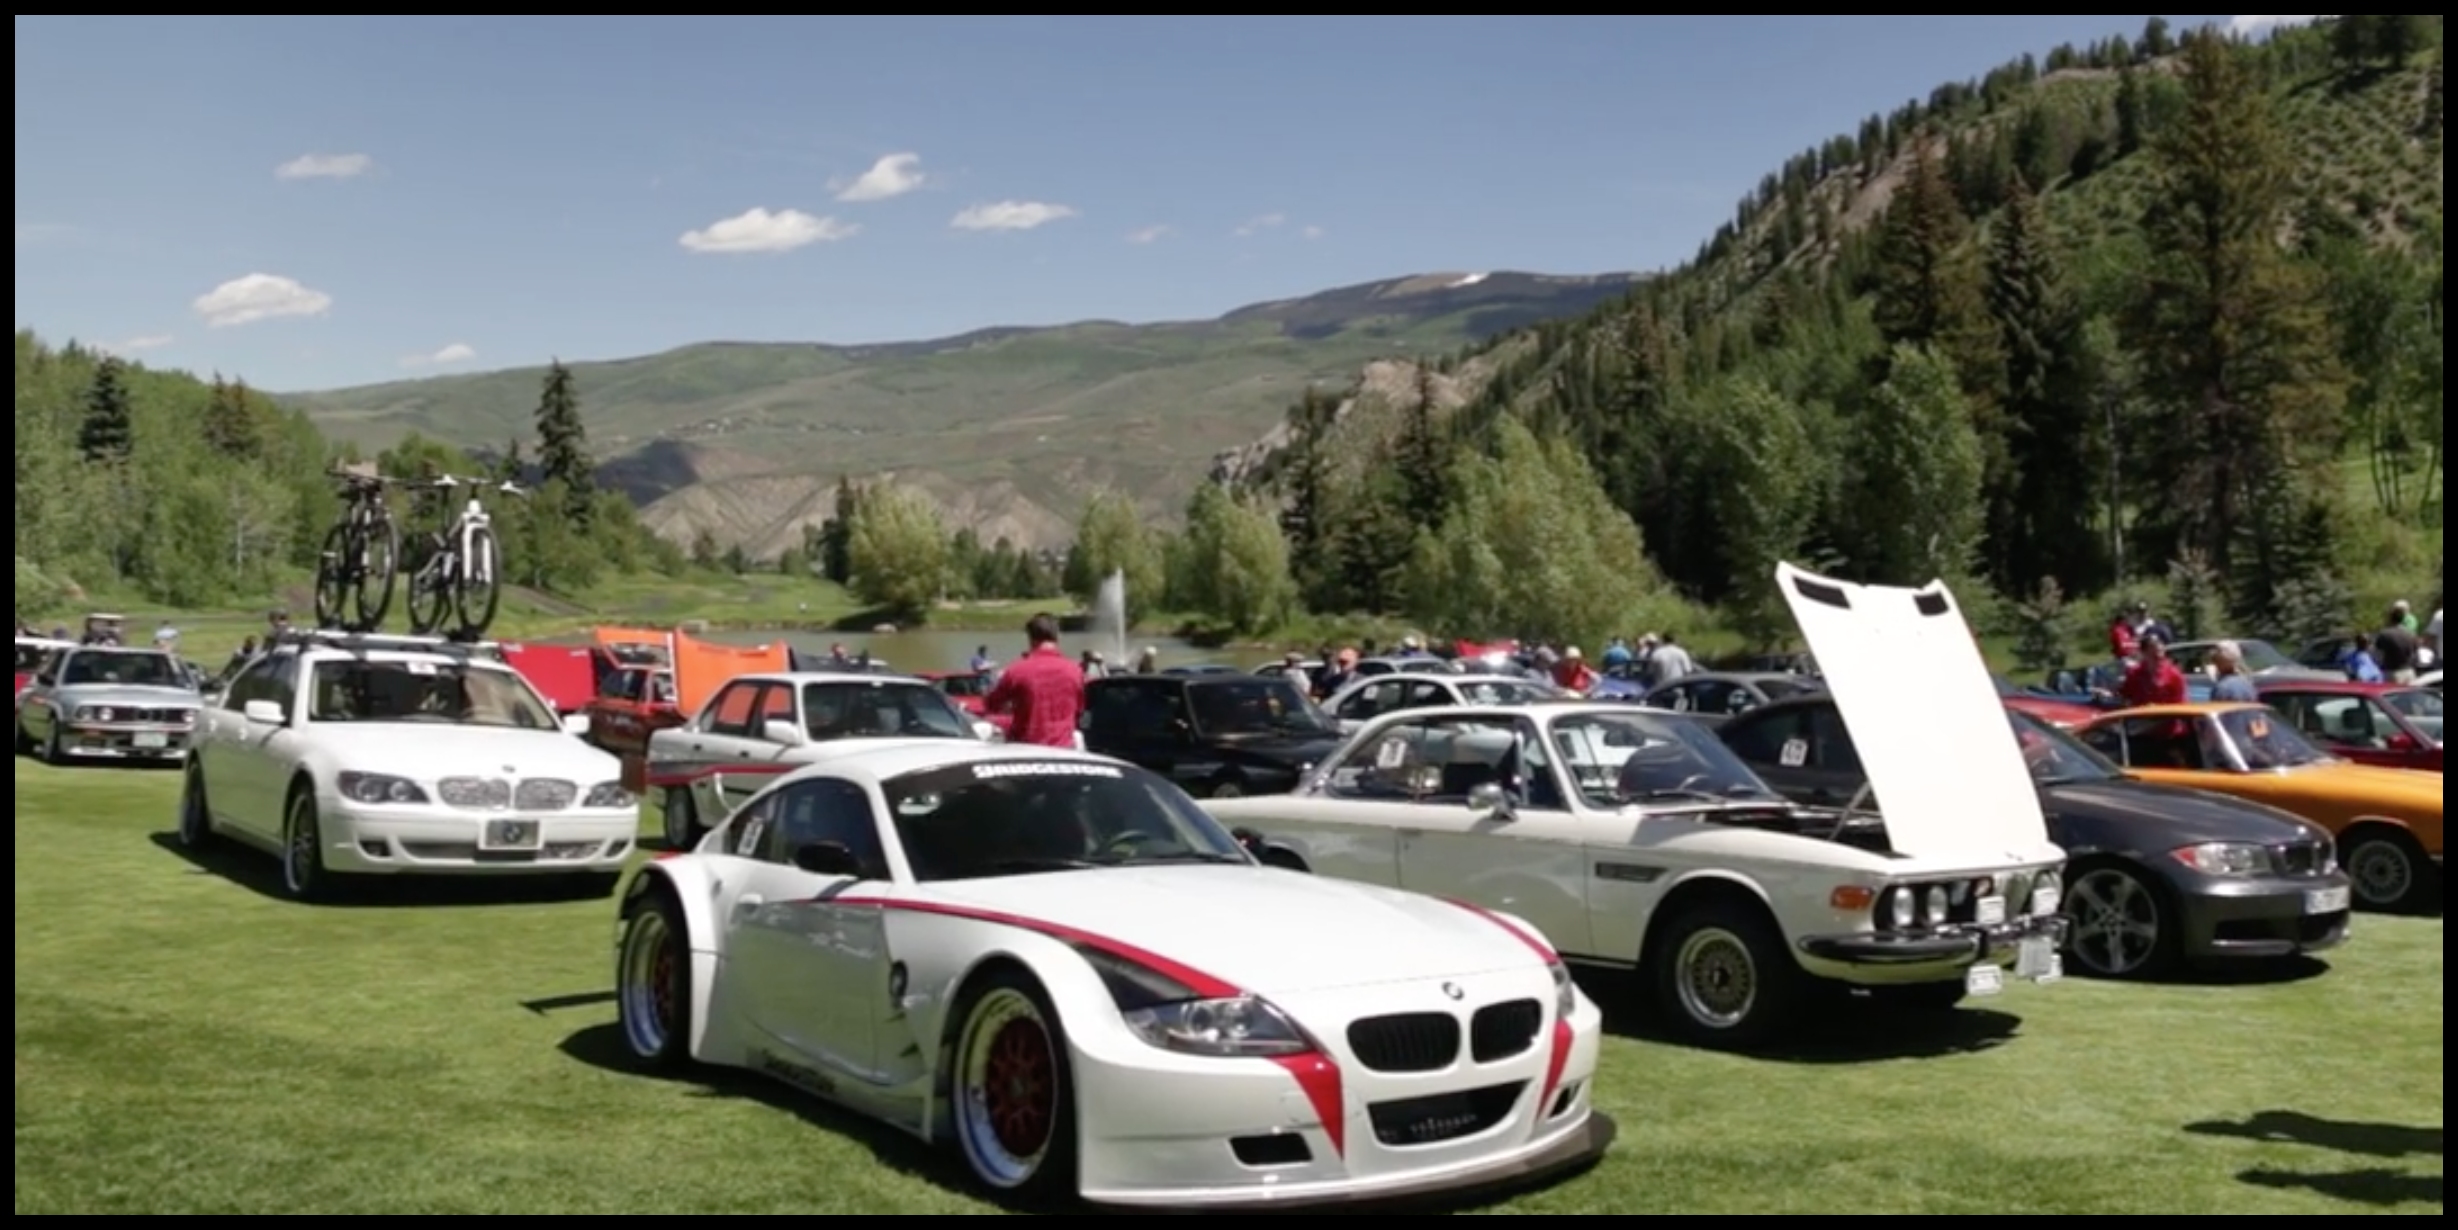 Car Show in Aspen Snowmass Sept 15th 2018